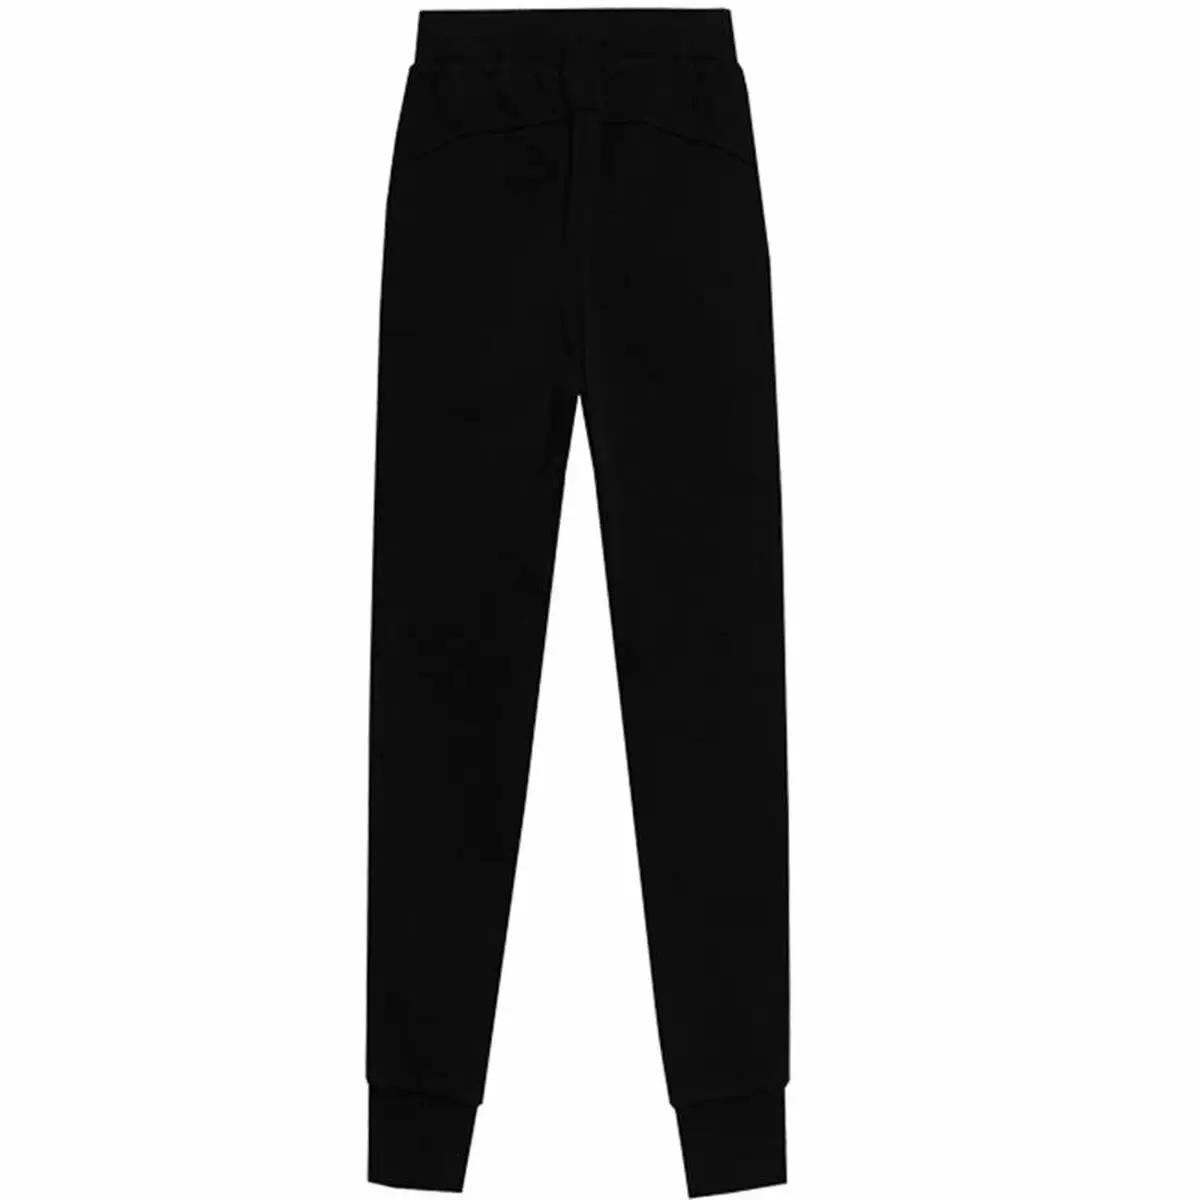 Pantalon de sport long 4f jogger swatpants noir_9583. DIAYTAR SENEGAL - Là où Chaque Achat a du Sens. Explorez notre gamme et choisissez des produits qui racontent une histoire, votre histoire.